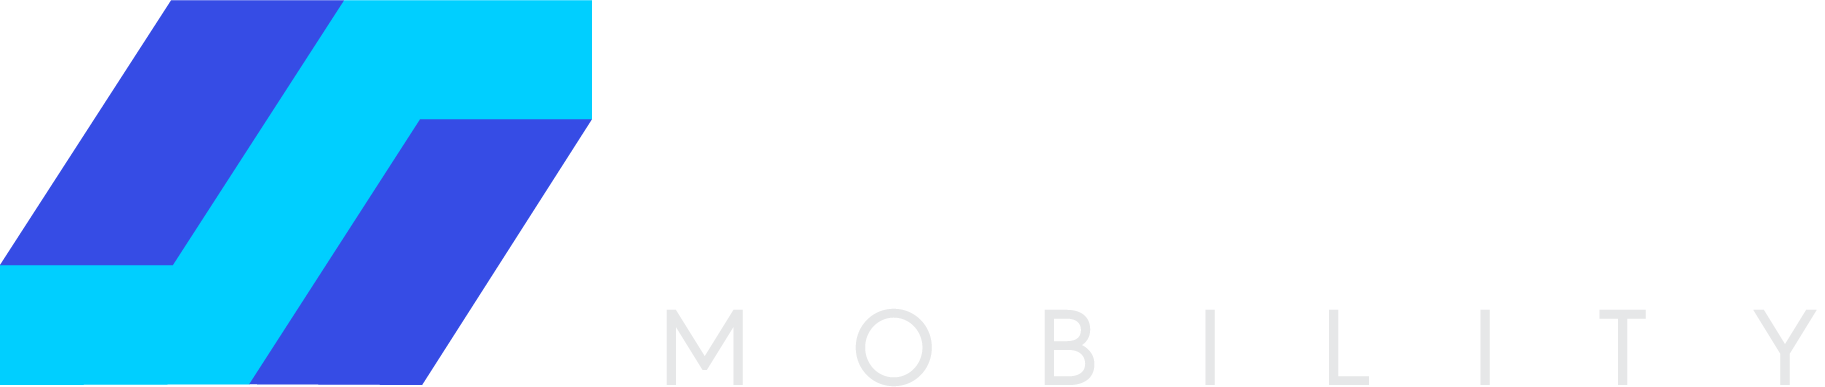 Logo_white text